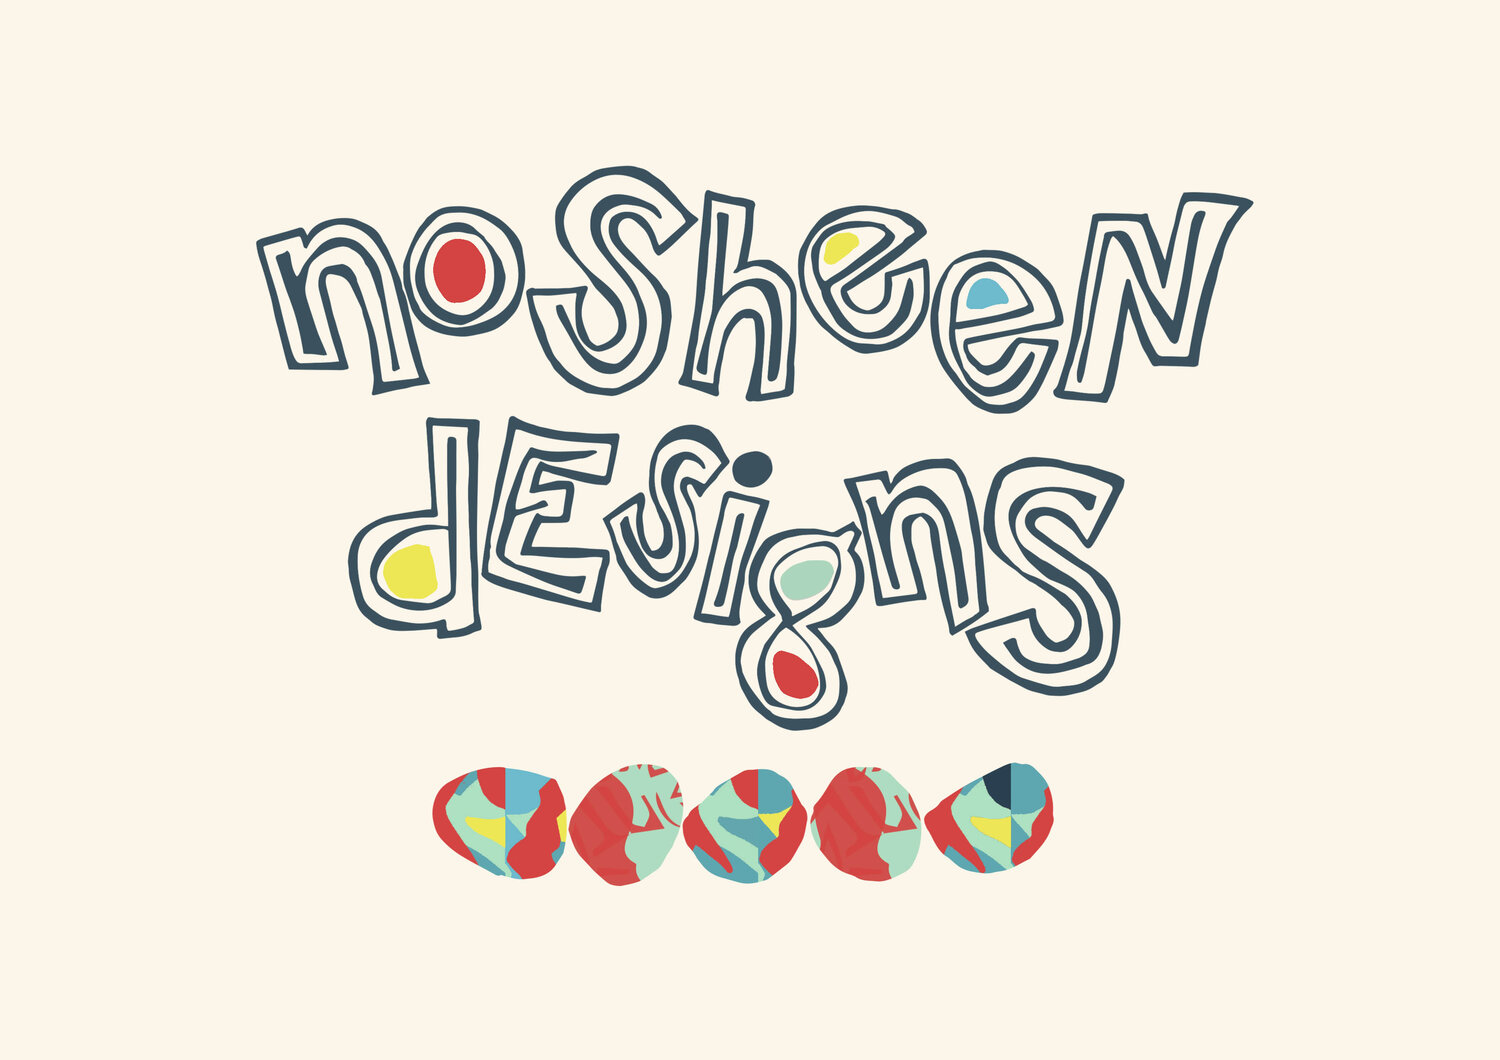 www.nosheendesigns.co.uk